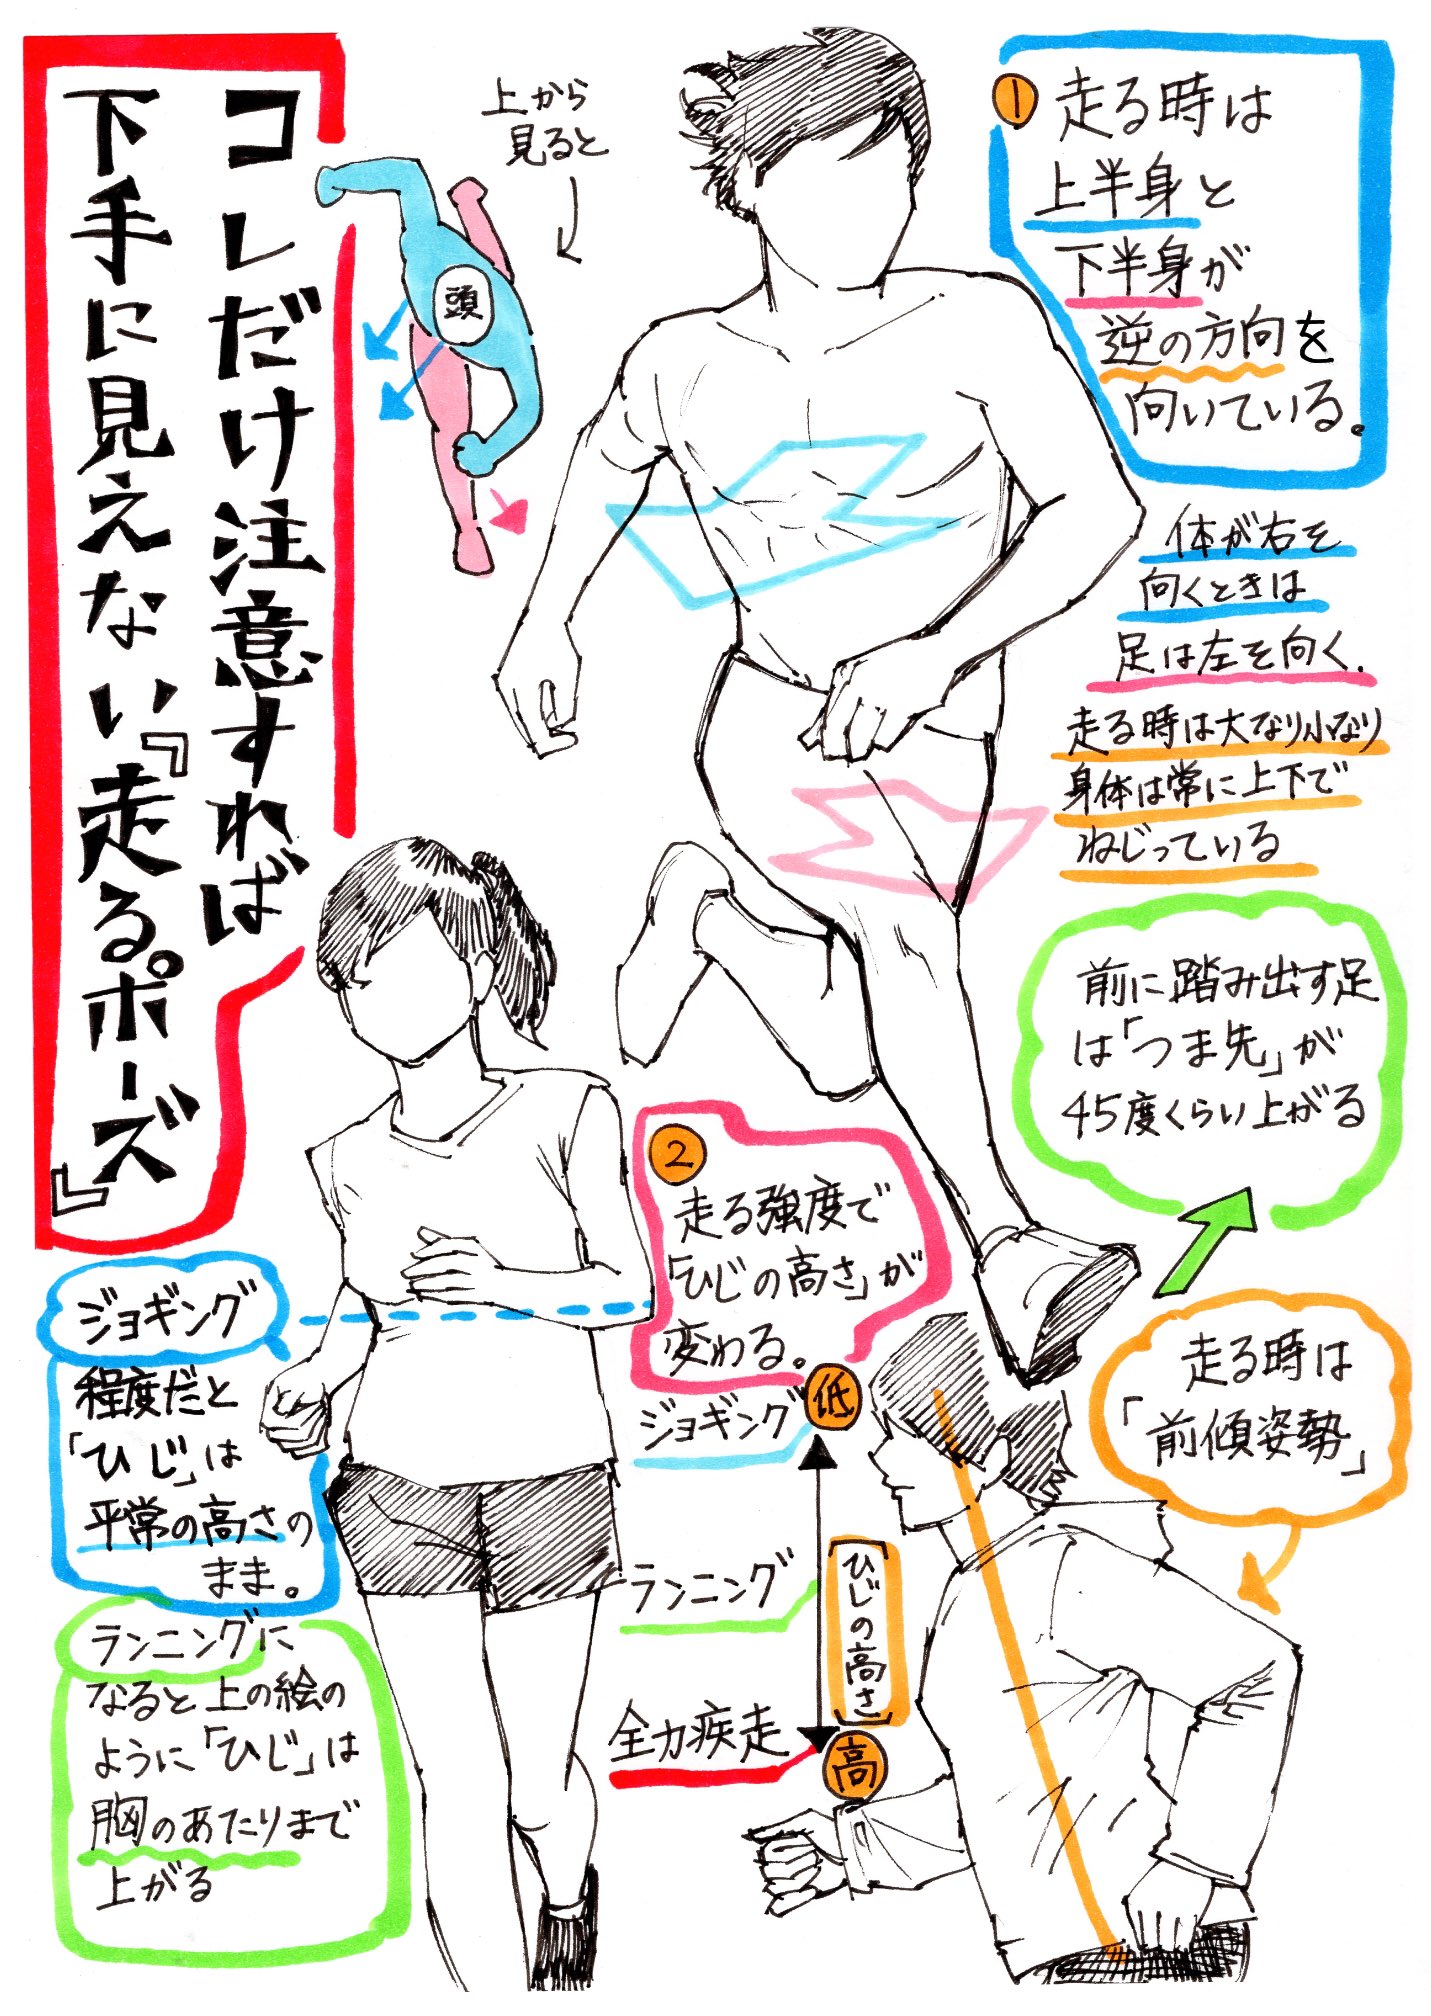 吉村拓也 イラスト講座 走るポーズの描き方 腕や胴体の回転アングルが上達する 体の動きを出すデッサン方法 T Co Elgwsdfmxx Twitter